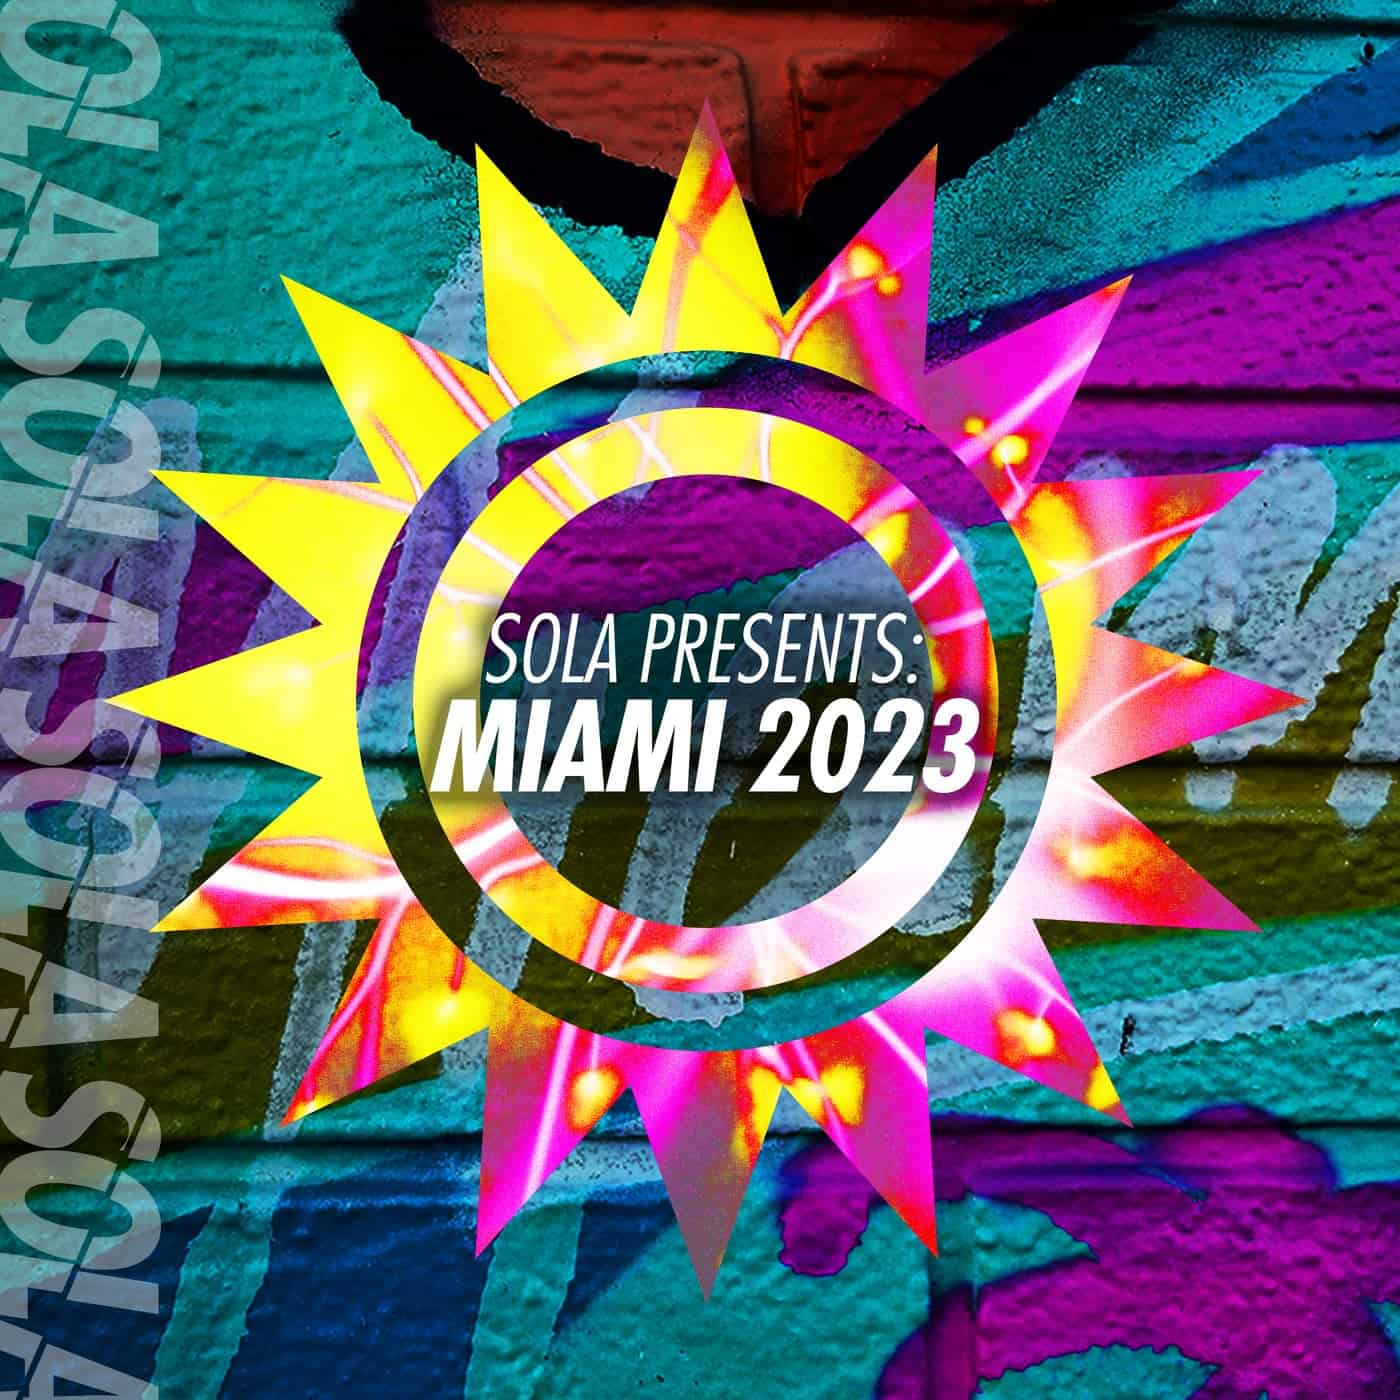 Download VA - Sola Presents: Miami 2023 on Electrobuzz